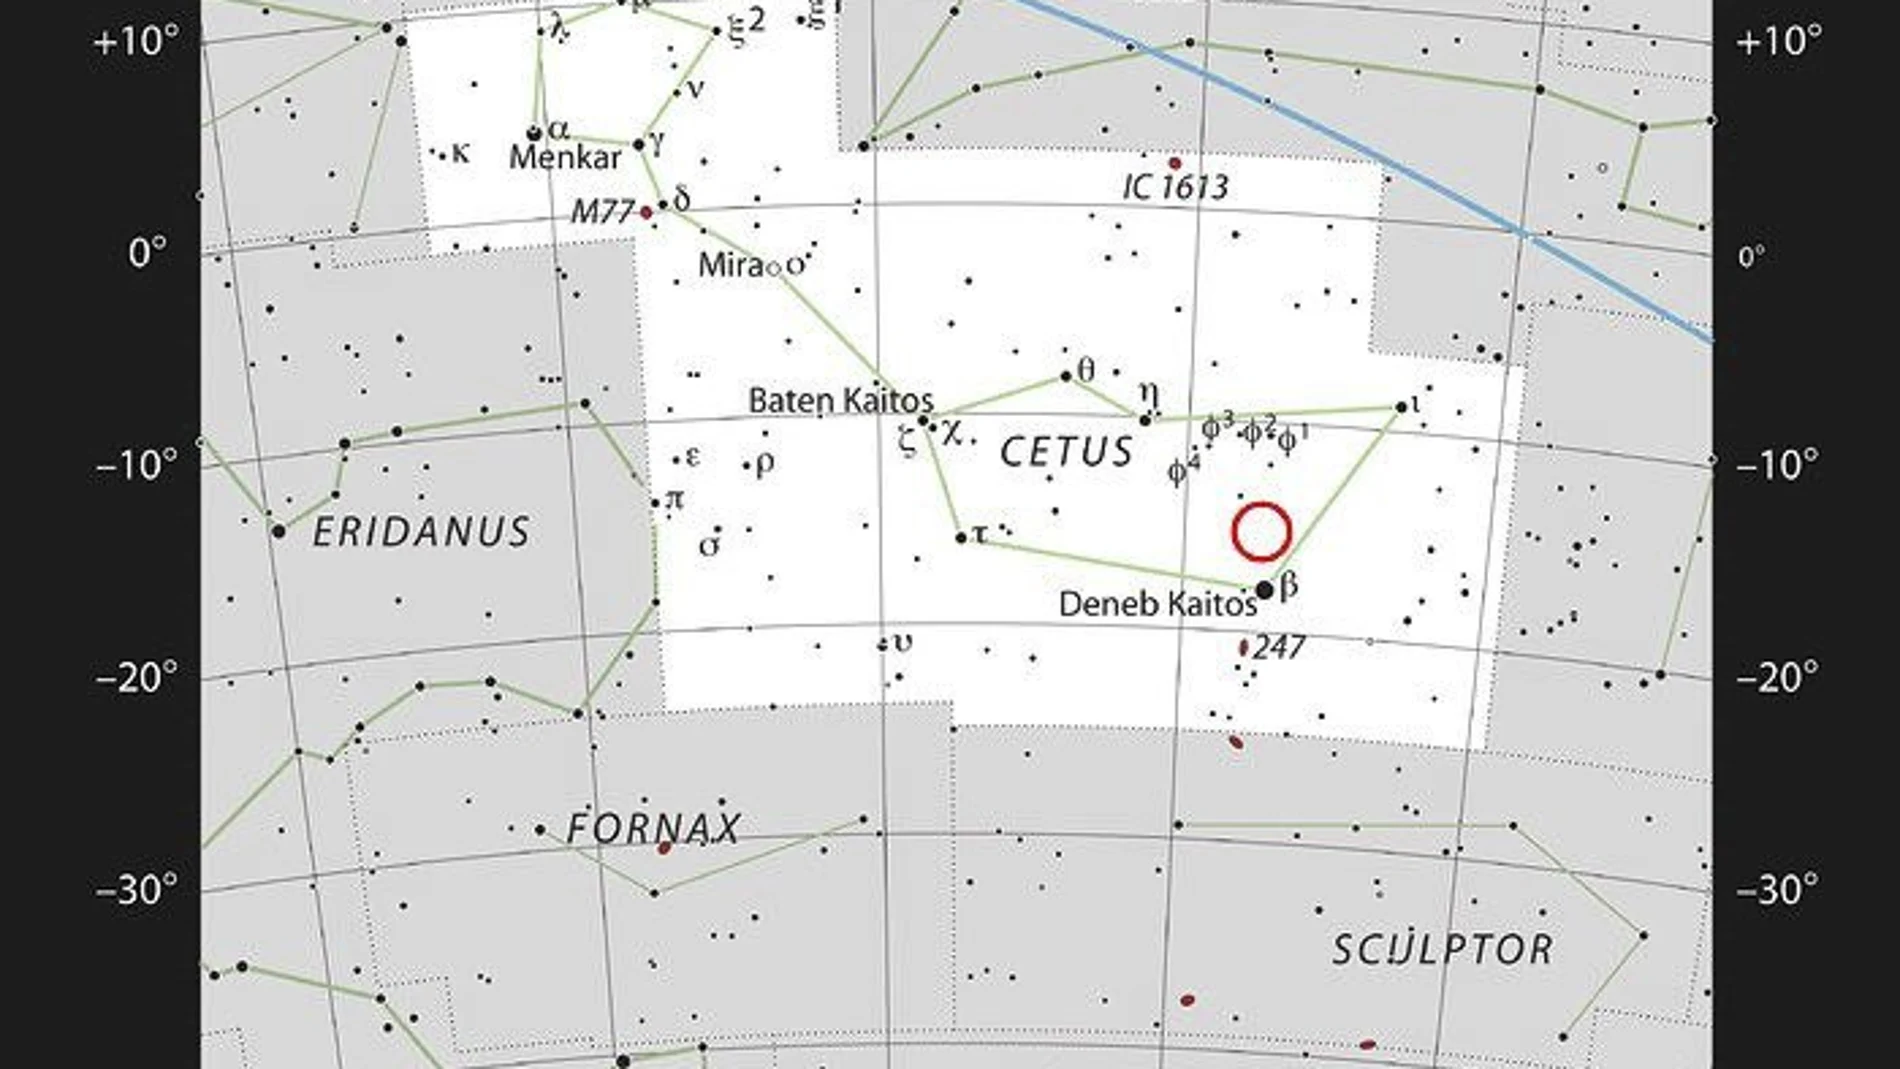 Mapa facilitado por el ESO, que muestra la ubicación del exoplaneta LHS 1140b